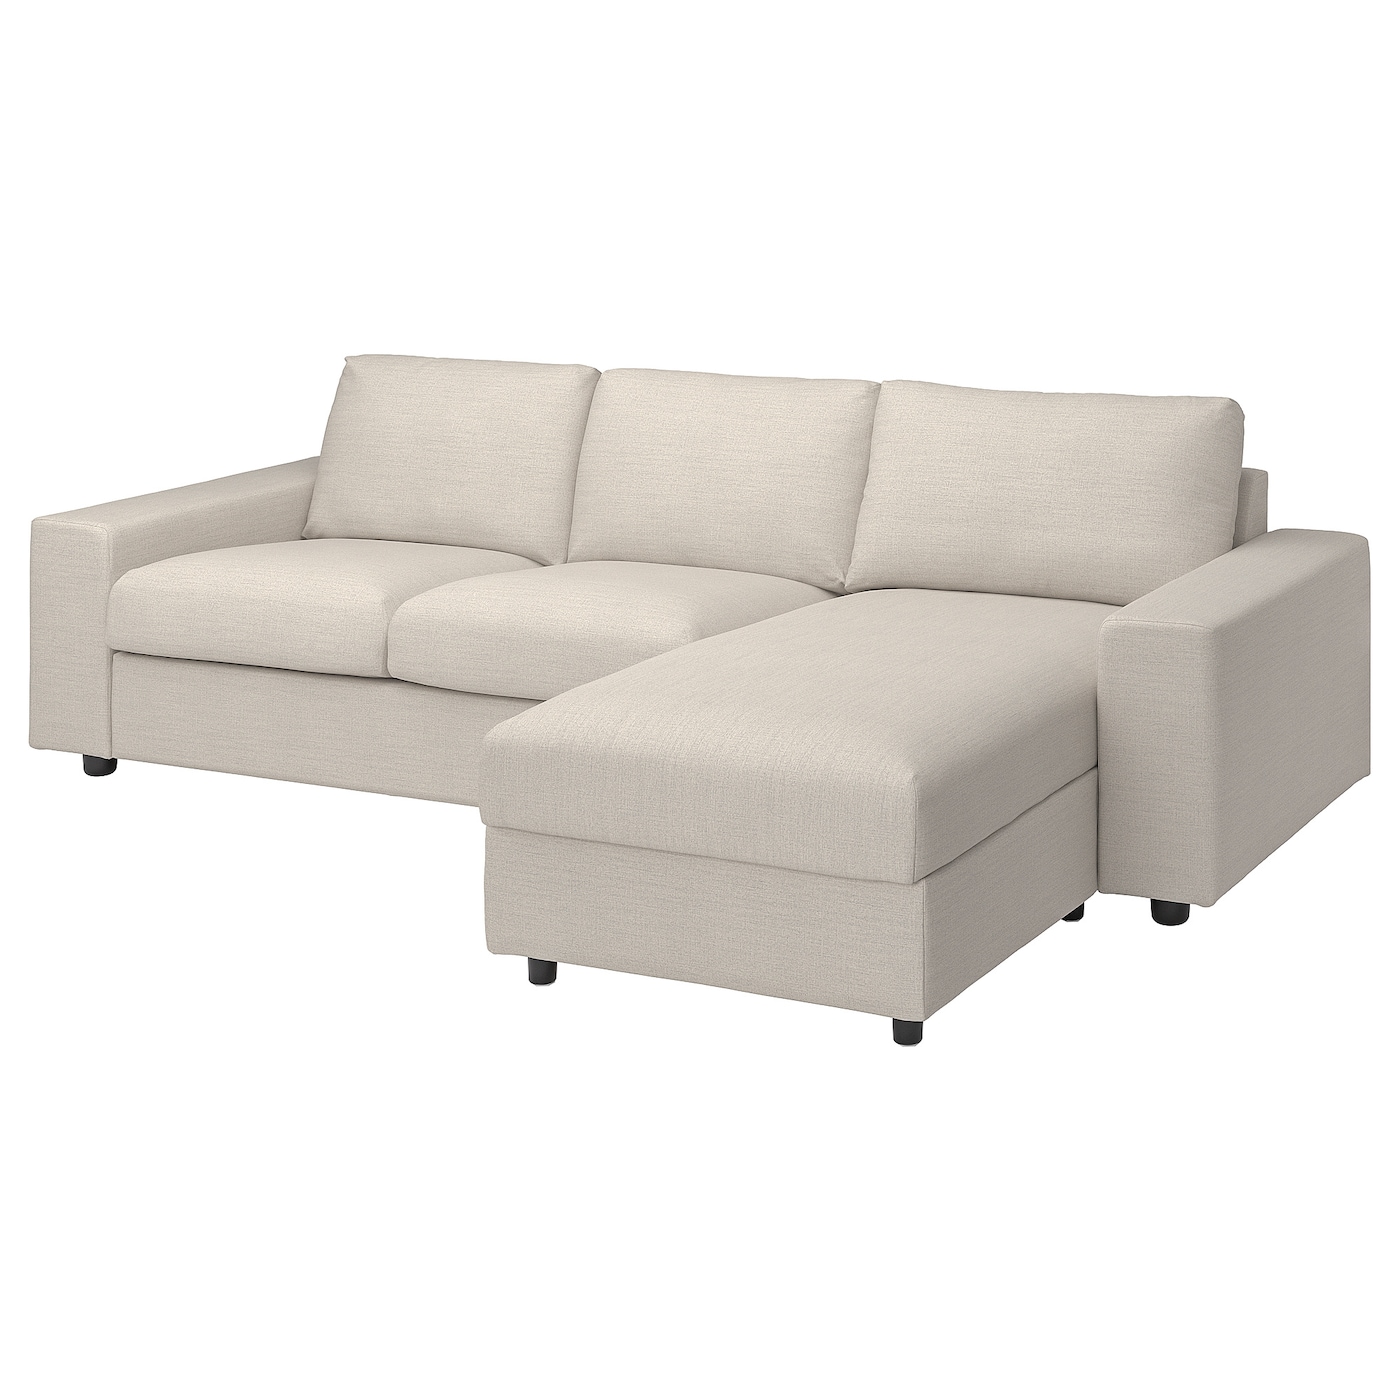 ВИМЛЕ 3-местный диван + диван, с широкими подлокотниками/Гуннаред бежевый VIMLE IKEA